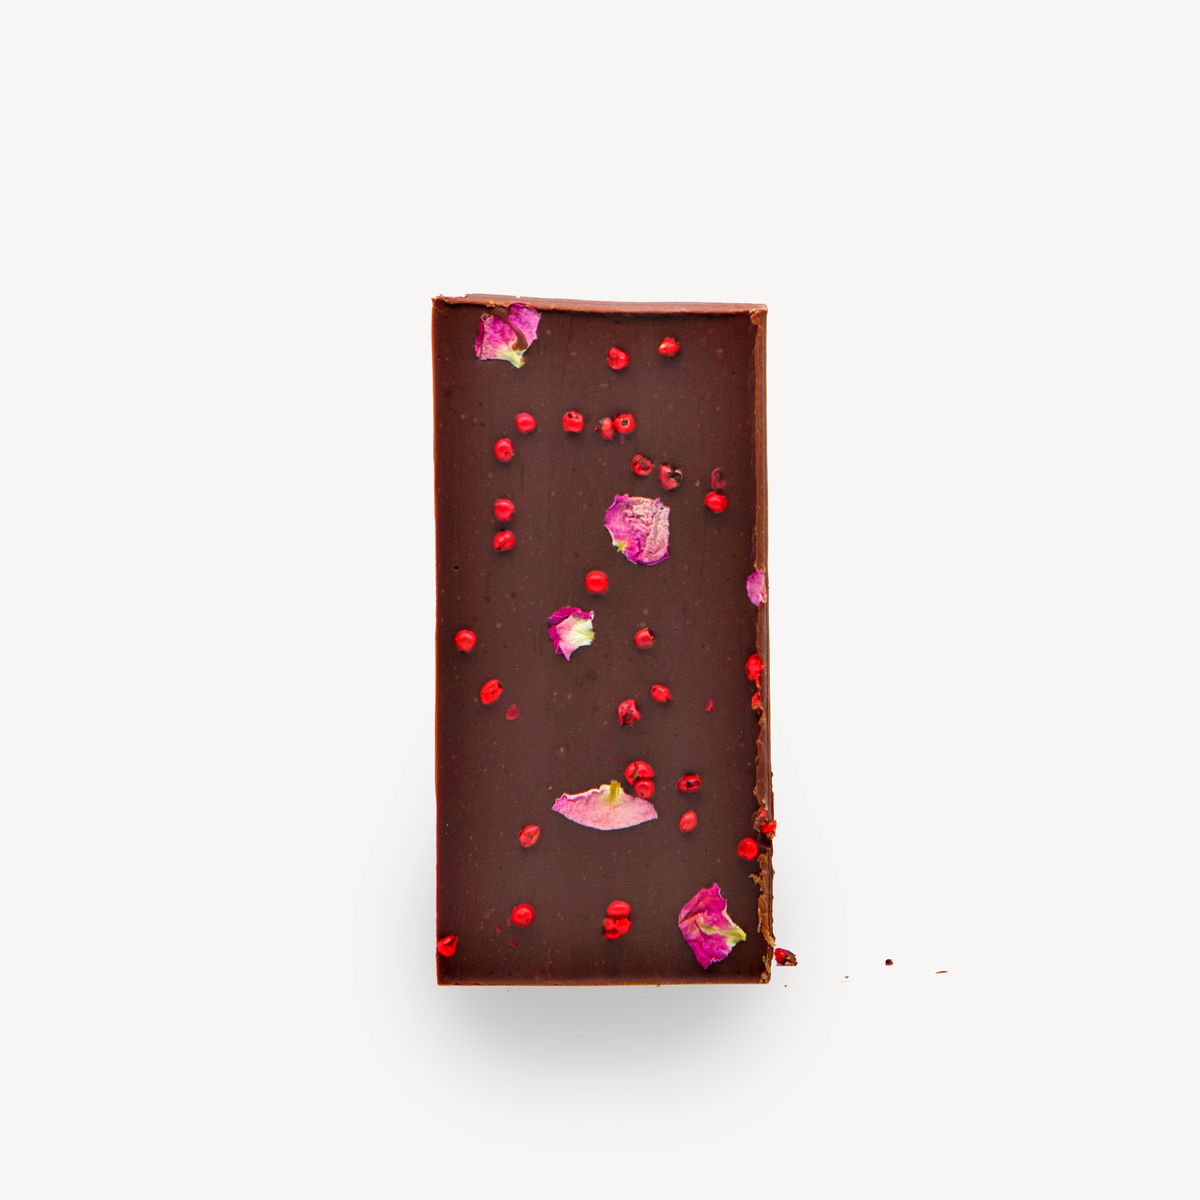 Σοκολάτα Cocoowa Six Senses, φωτογραφία προϊόντος χωρίς το περιτύλιγμα.